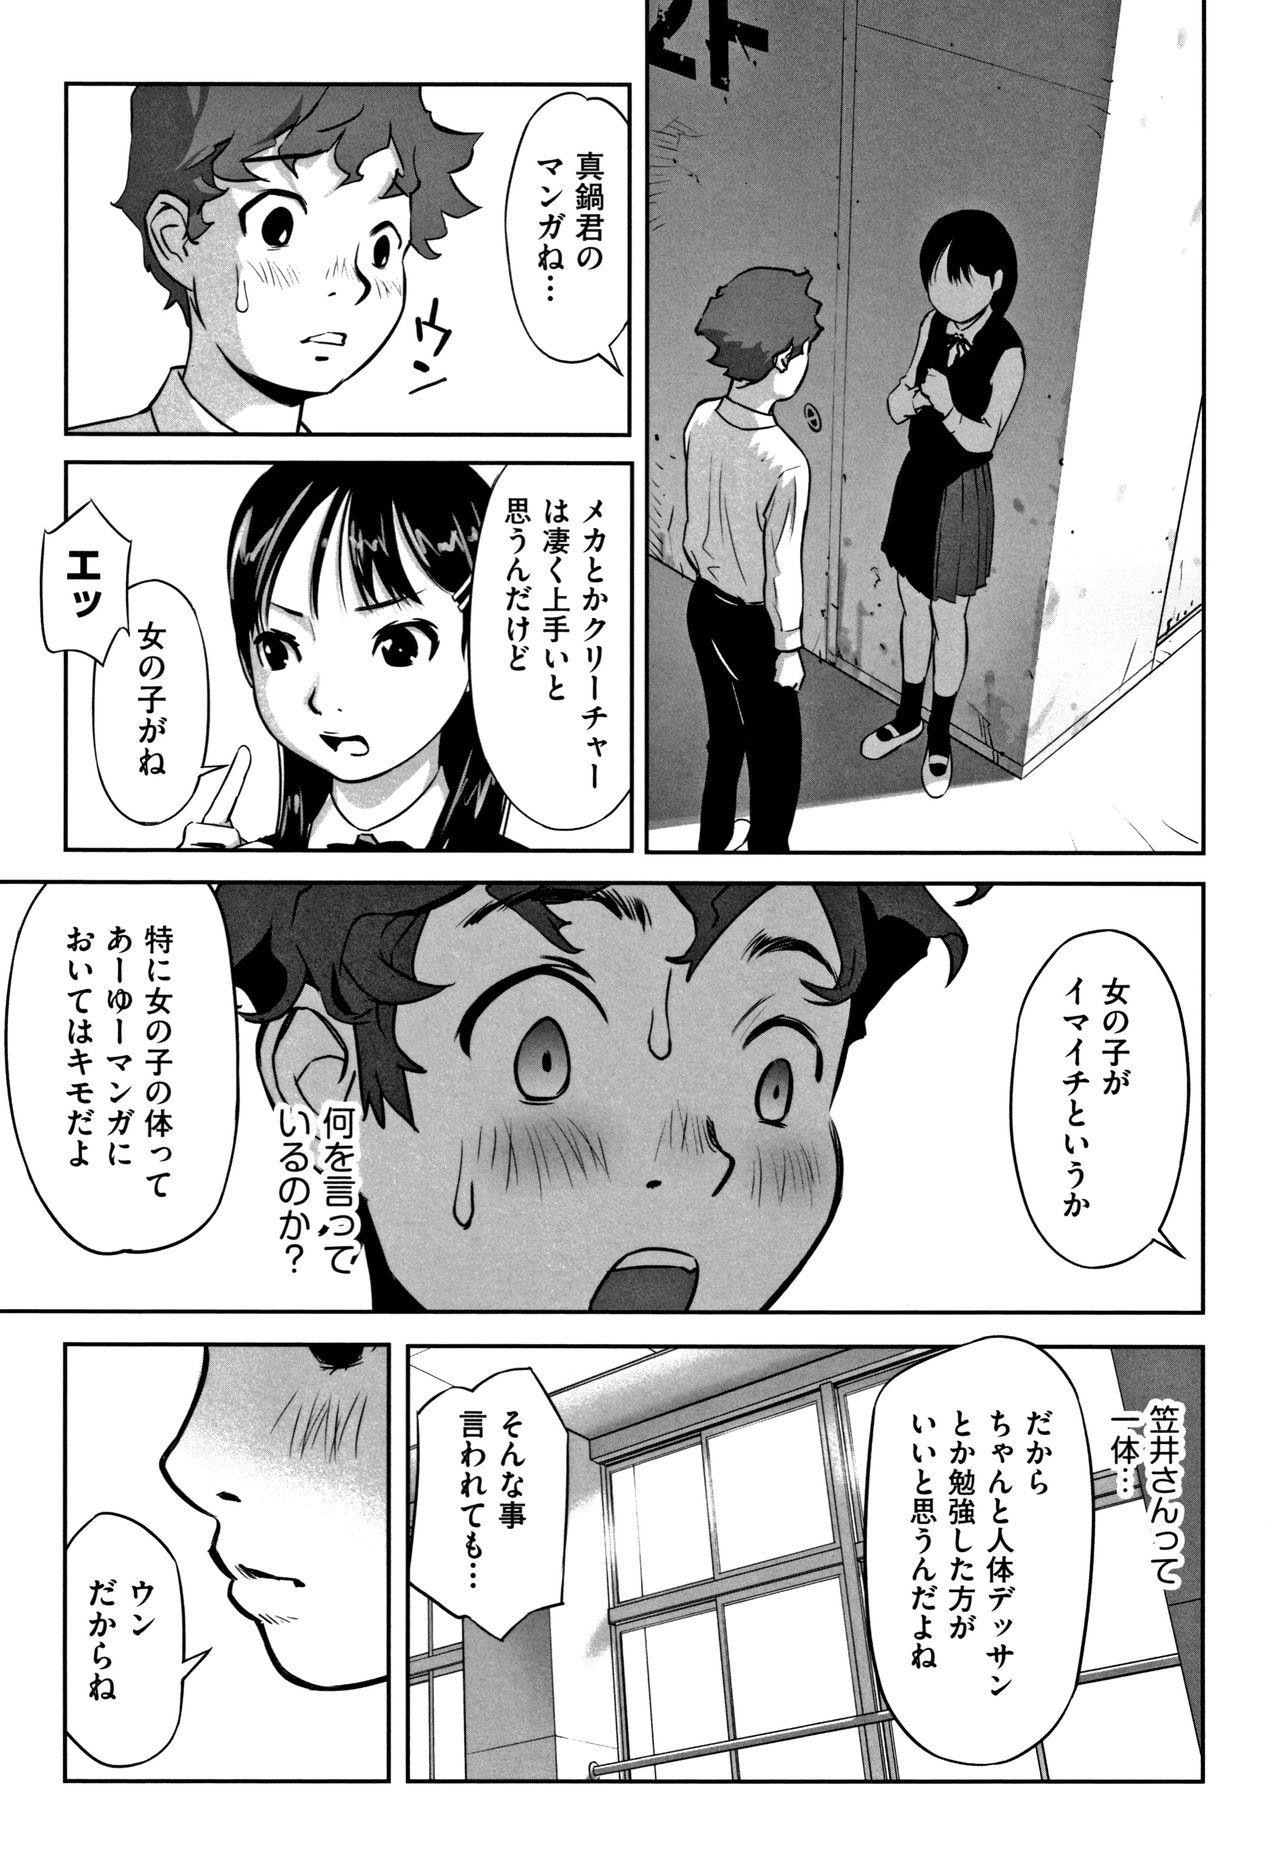 Jizz Otokonoko wa Soko no Kouzou ga Shiritai noda Perfect Teen - Page 12